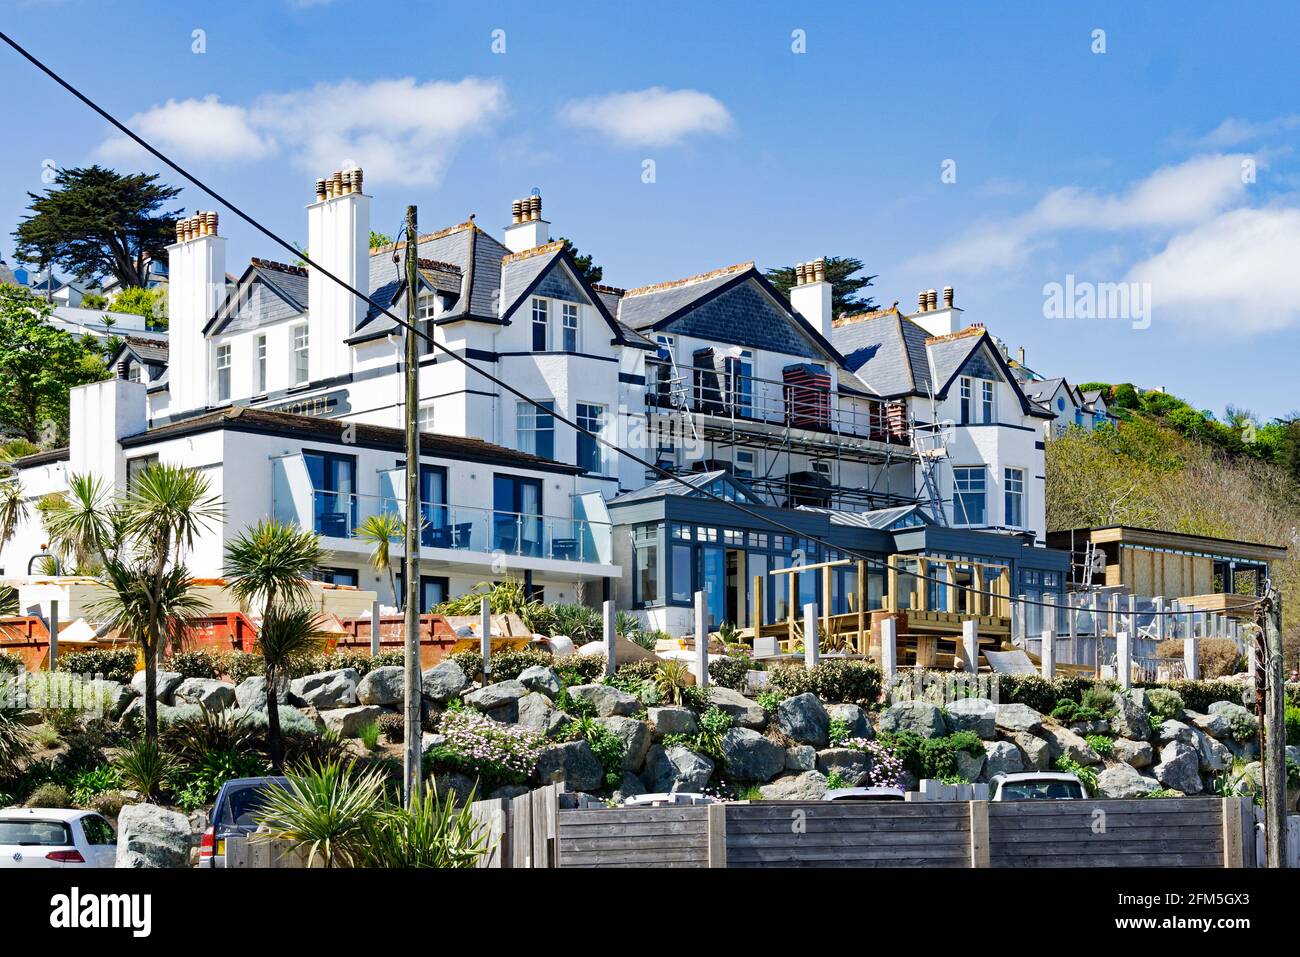 Das Carbis Bay Hotel mit Blick auf den Strand an der Carbis Bay in der Nähe von St. ives in Cornwall, England, Großbritannien. Das Hotel ist Austragungsort des G7-Gipfels im Juni 2021 Stockfoto